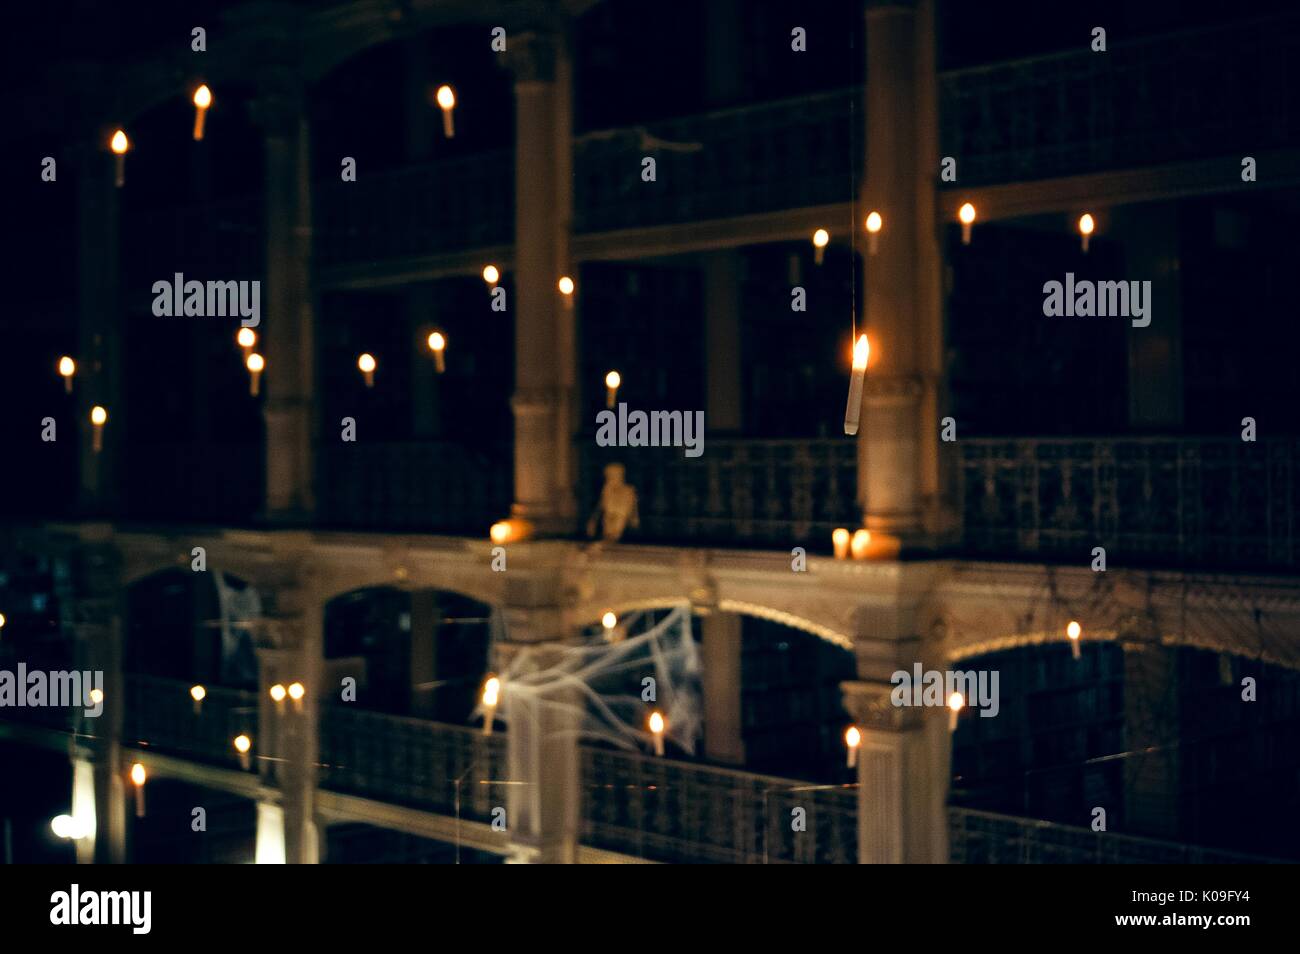 Point de vue d'un niveau supérieur de la bibliothèque Peabody de lumières qui pendait au-dessus de 2015. Avec la permission de Eric Chen. Banque D'Images